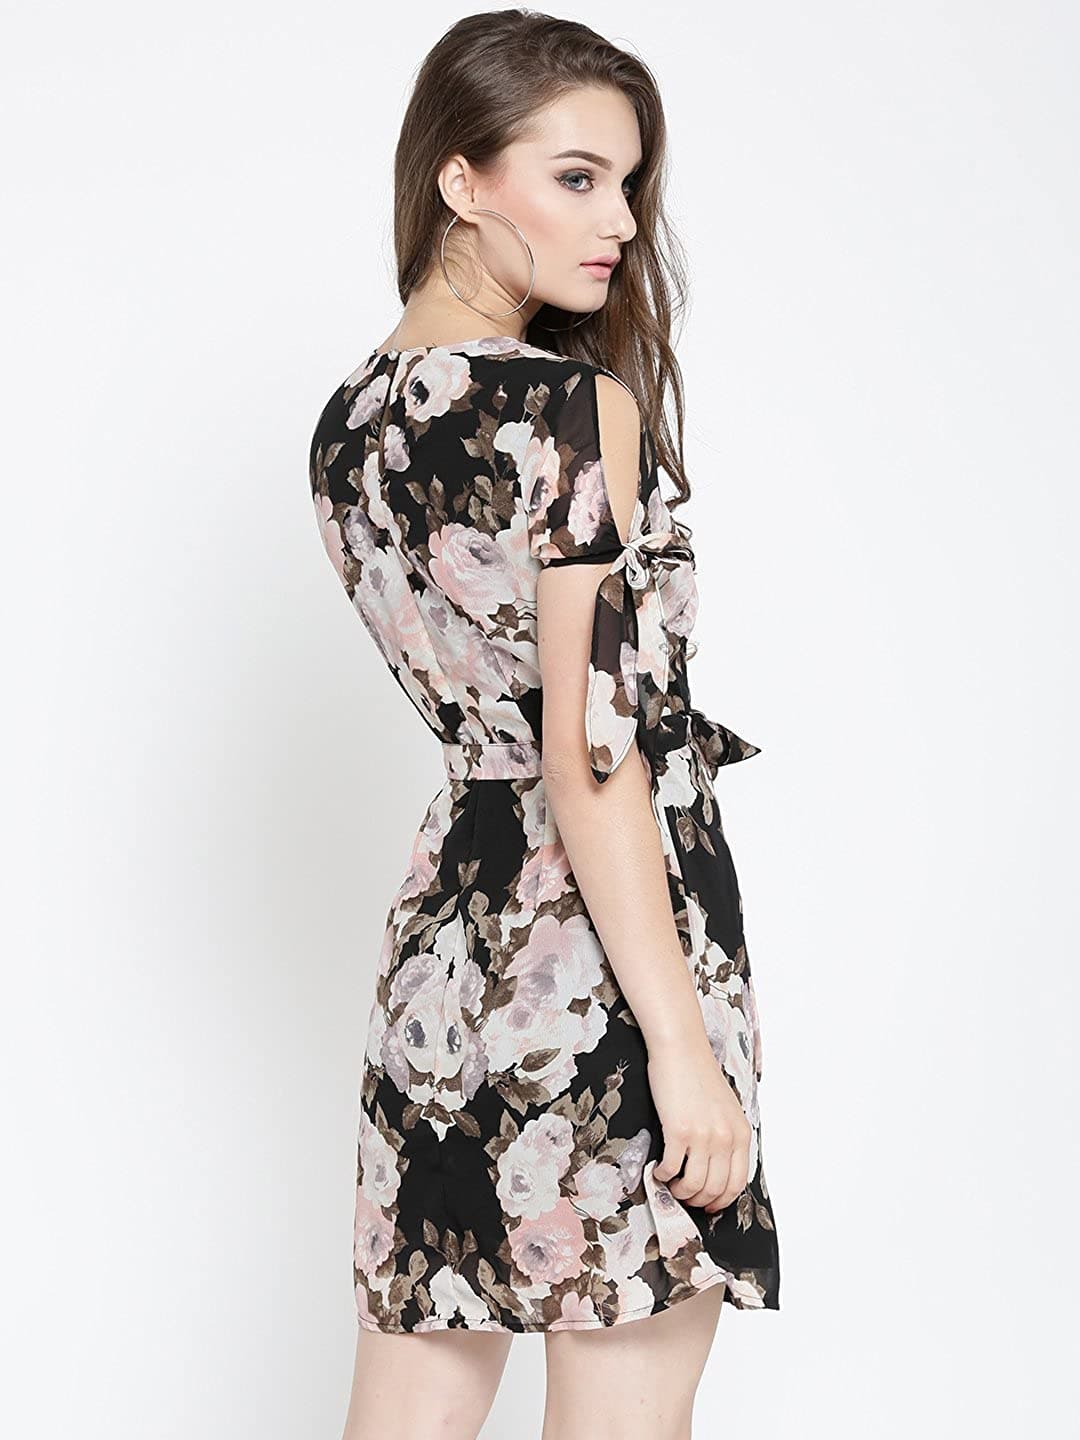 Half shoulder dress in stock 🌹 | Instagram